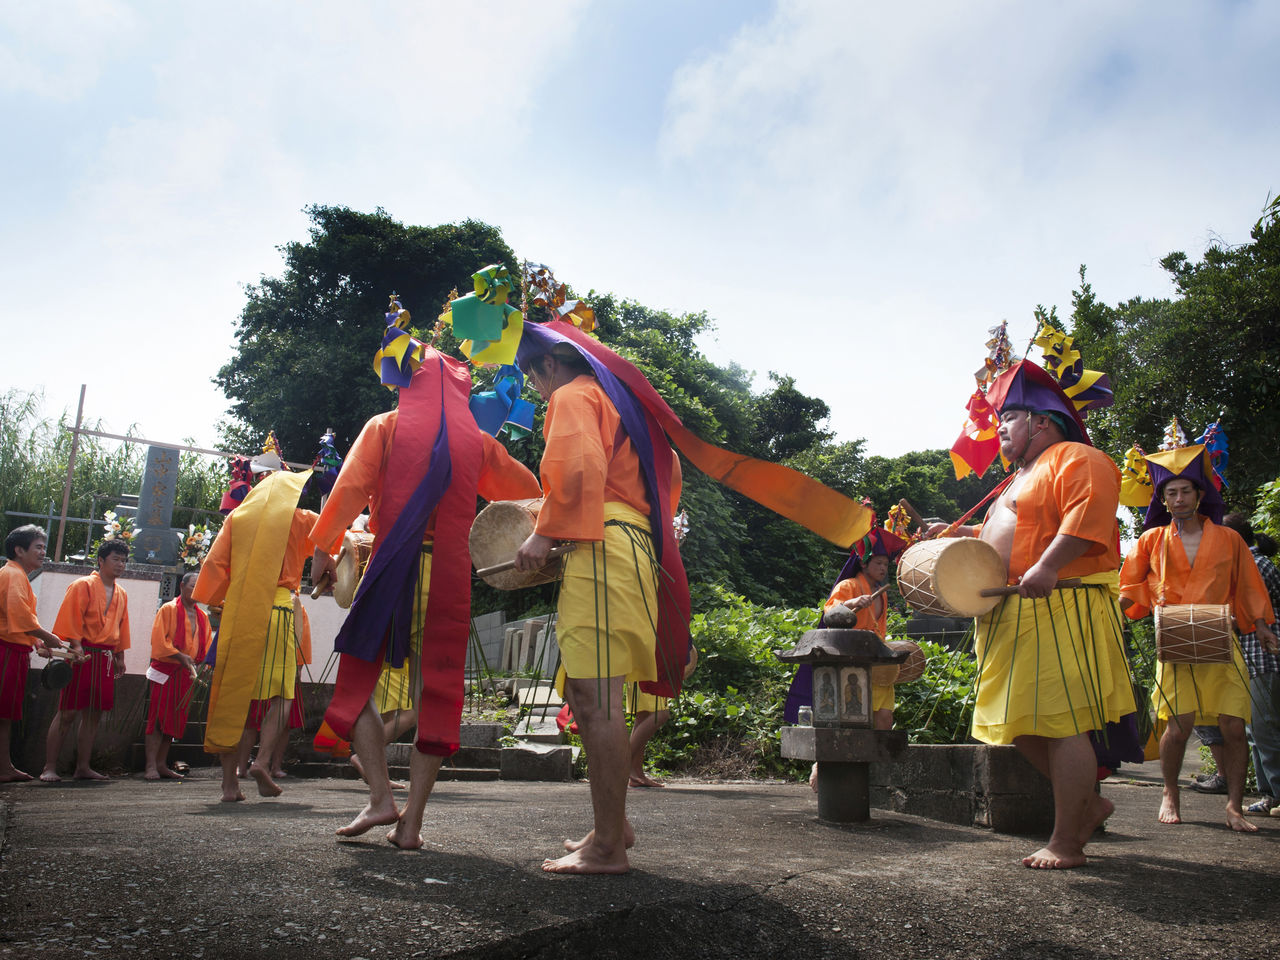 Les costumes colorés et les tambours battants font partis des attractions des danses ômondê de l’île de Sagano.